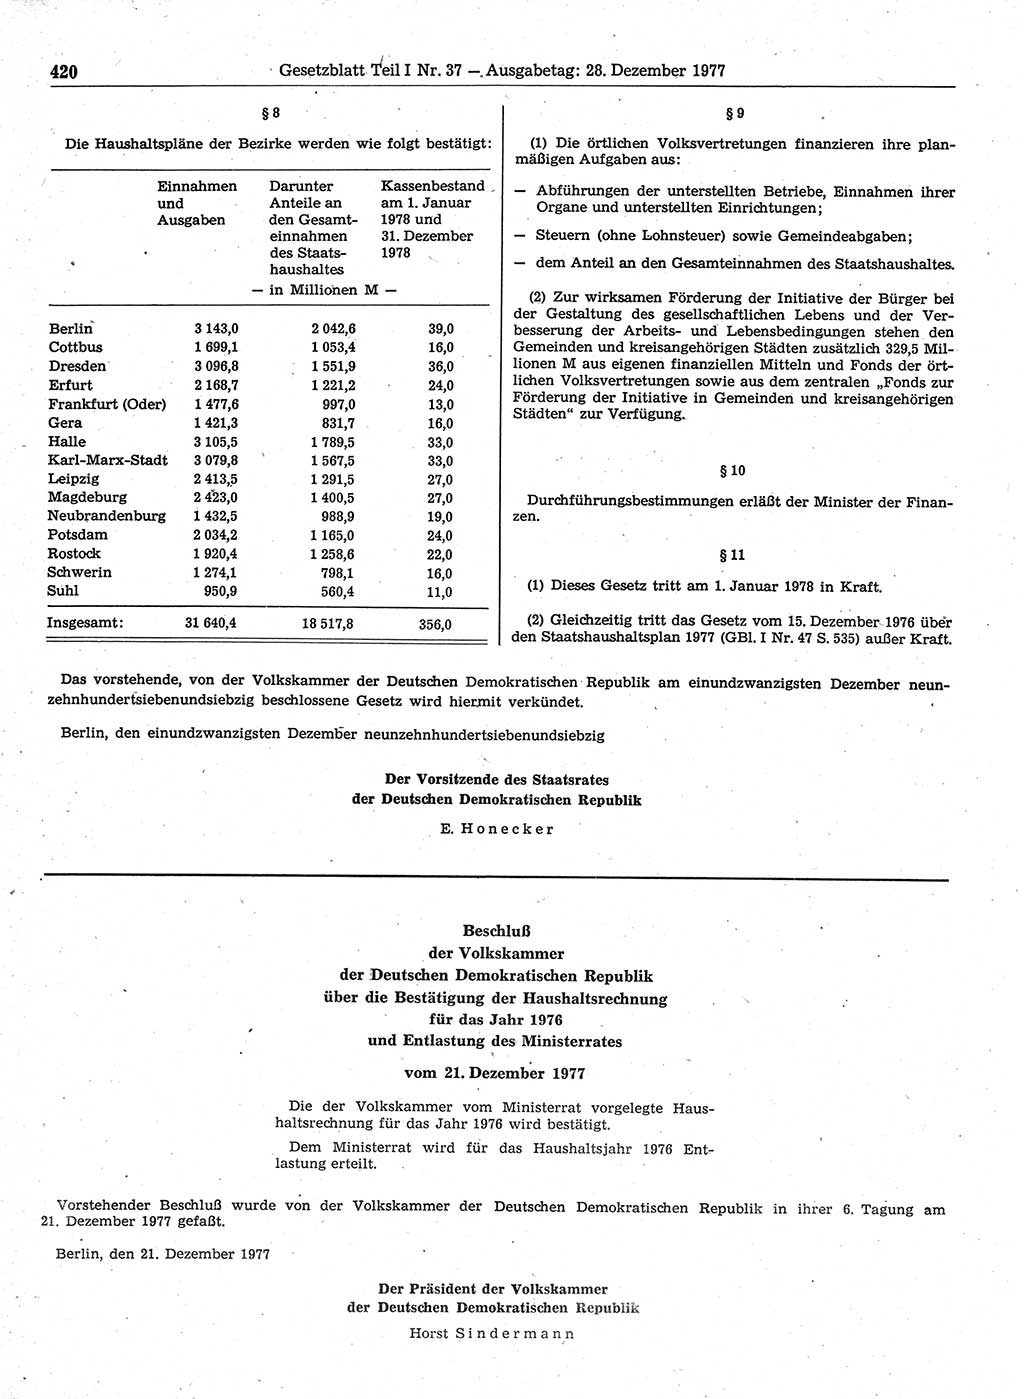 Gesetzblatt (GBl.) der Deutschen Demokratischen Republik (DDR) Teil Ⅰ 1977, Seite 420 (GBl. DDR Ⅰ 1977, S. 420)